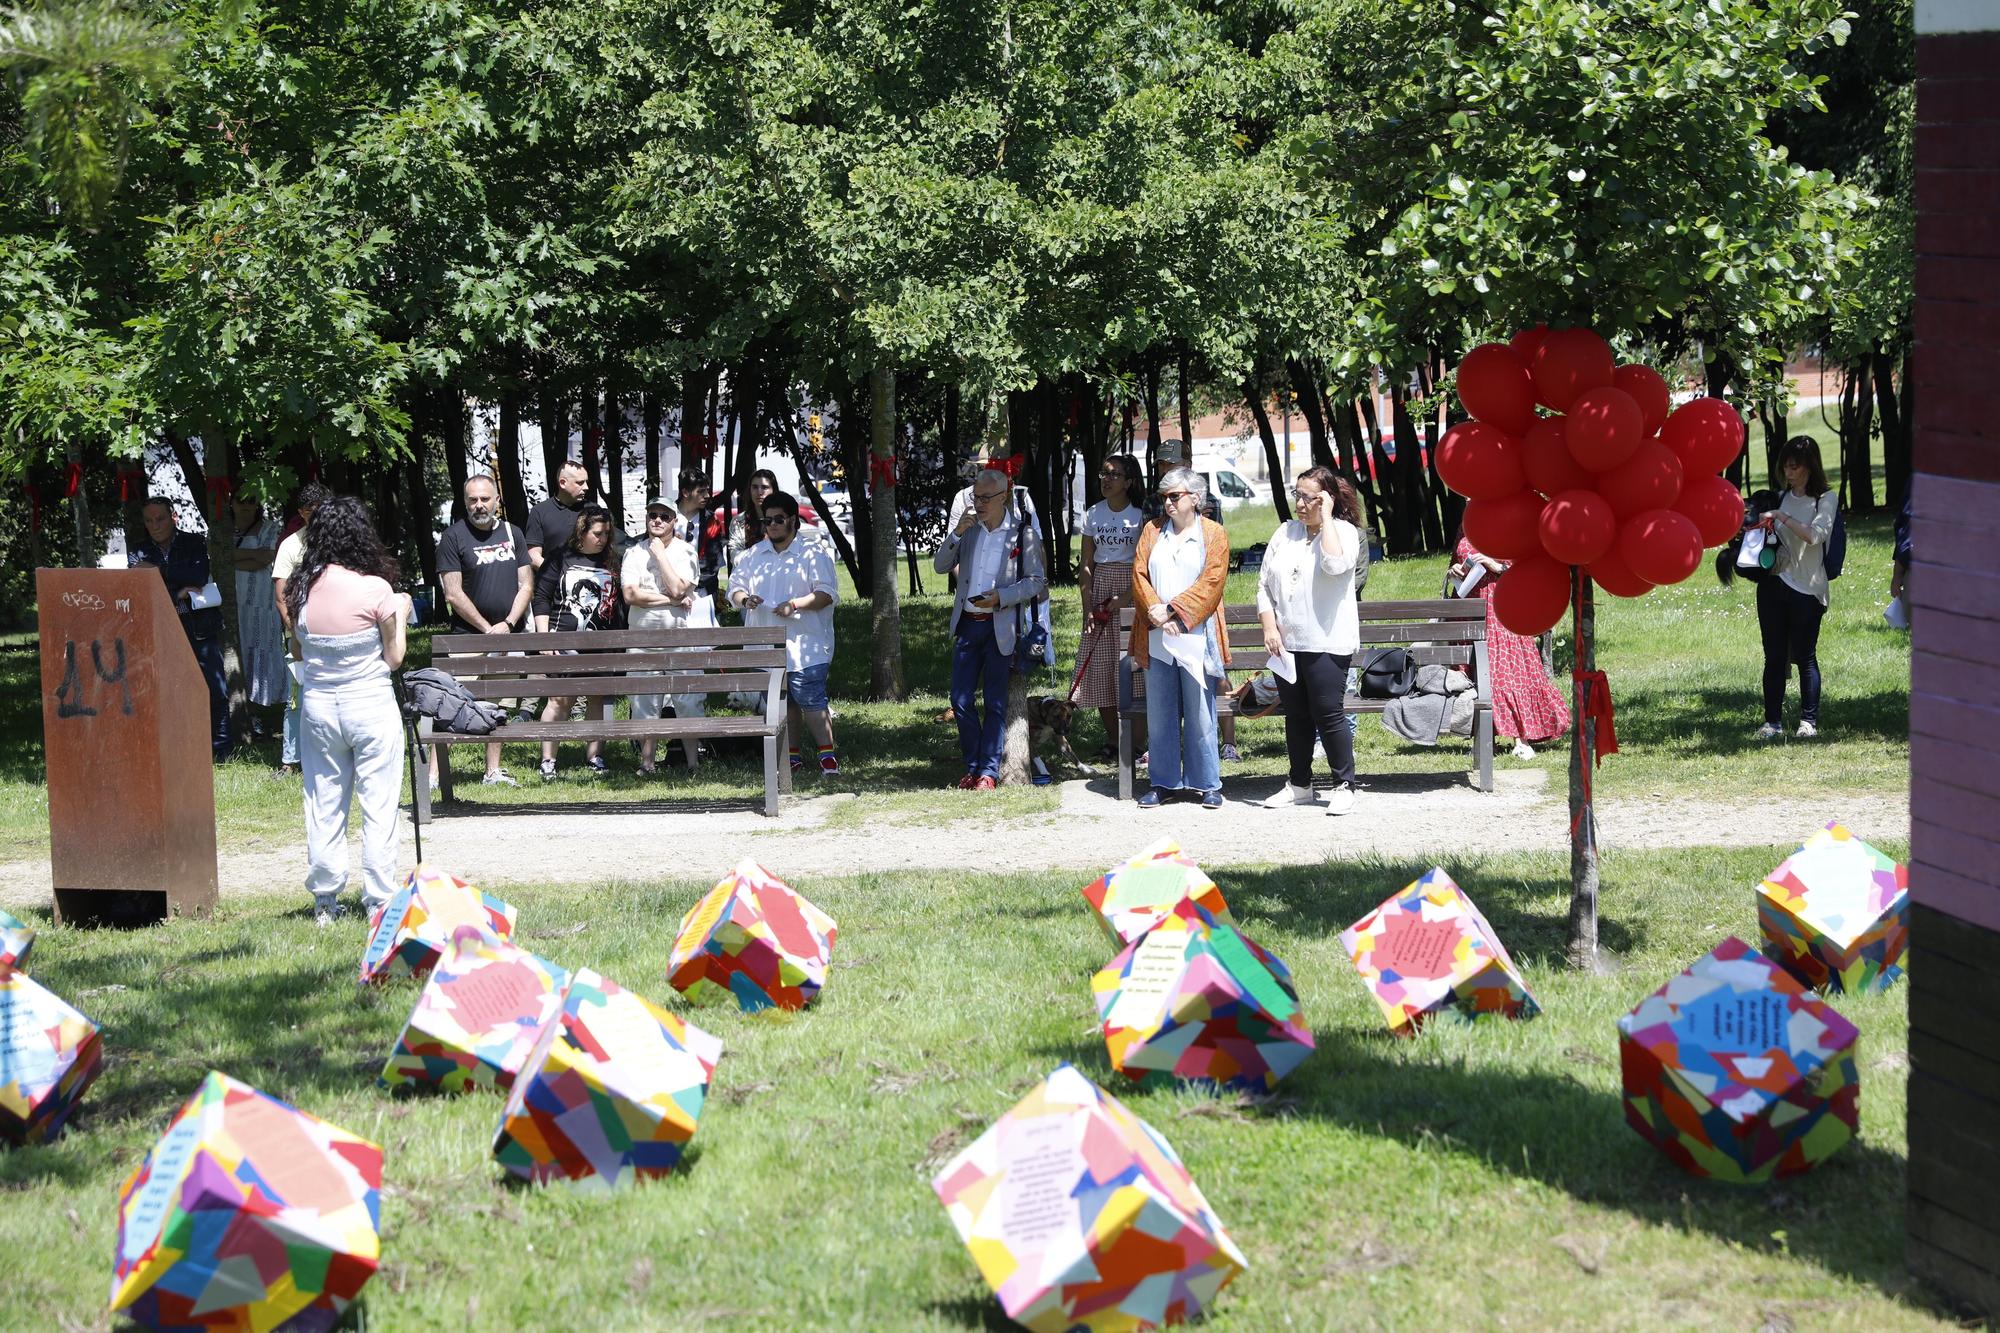 En imágenes: Memorial del sida en el Bosque de la Memoria, en el parque de Los Pericones